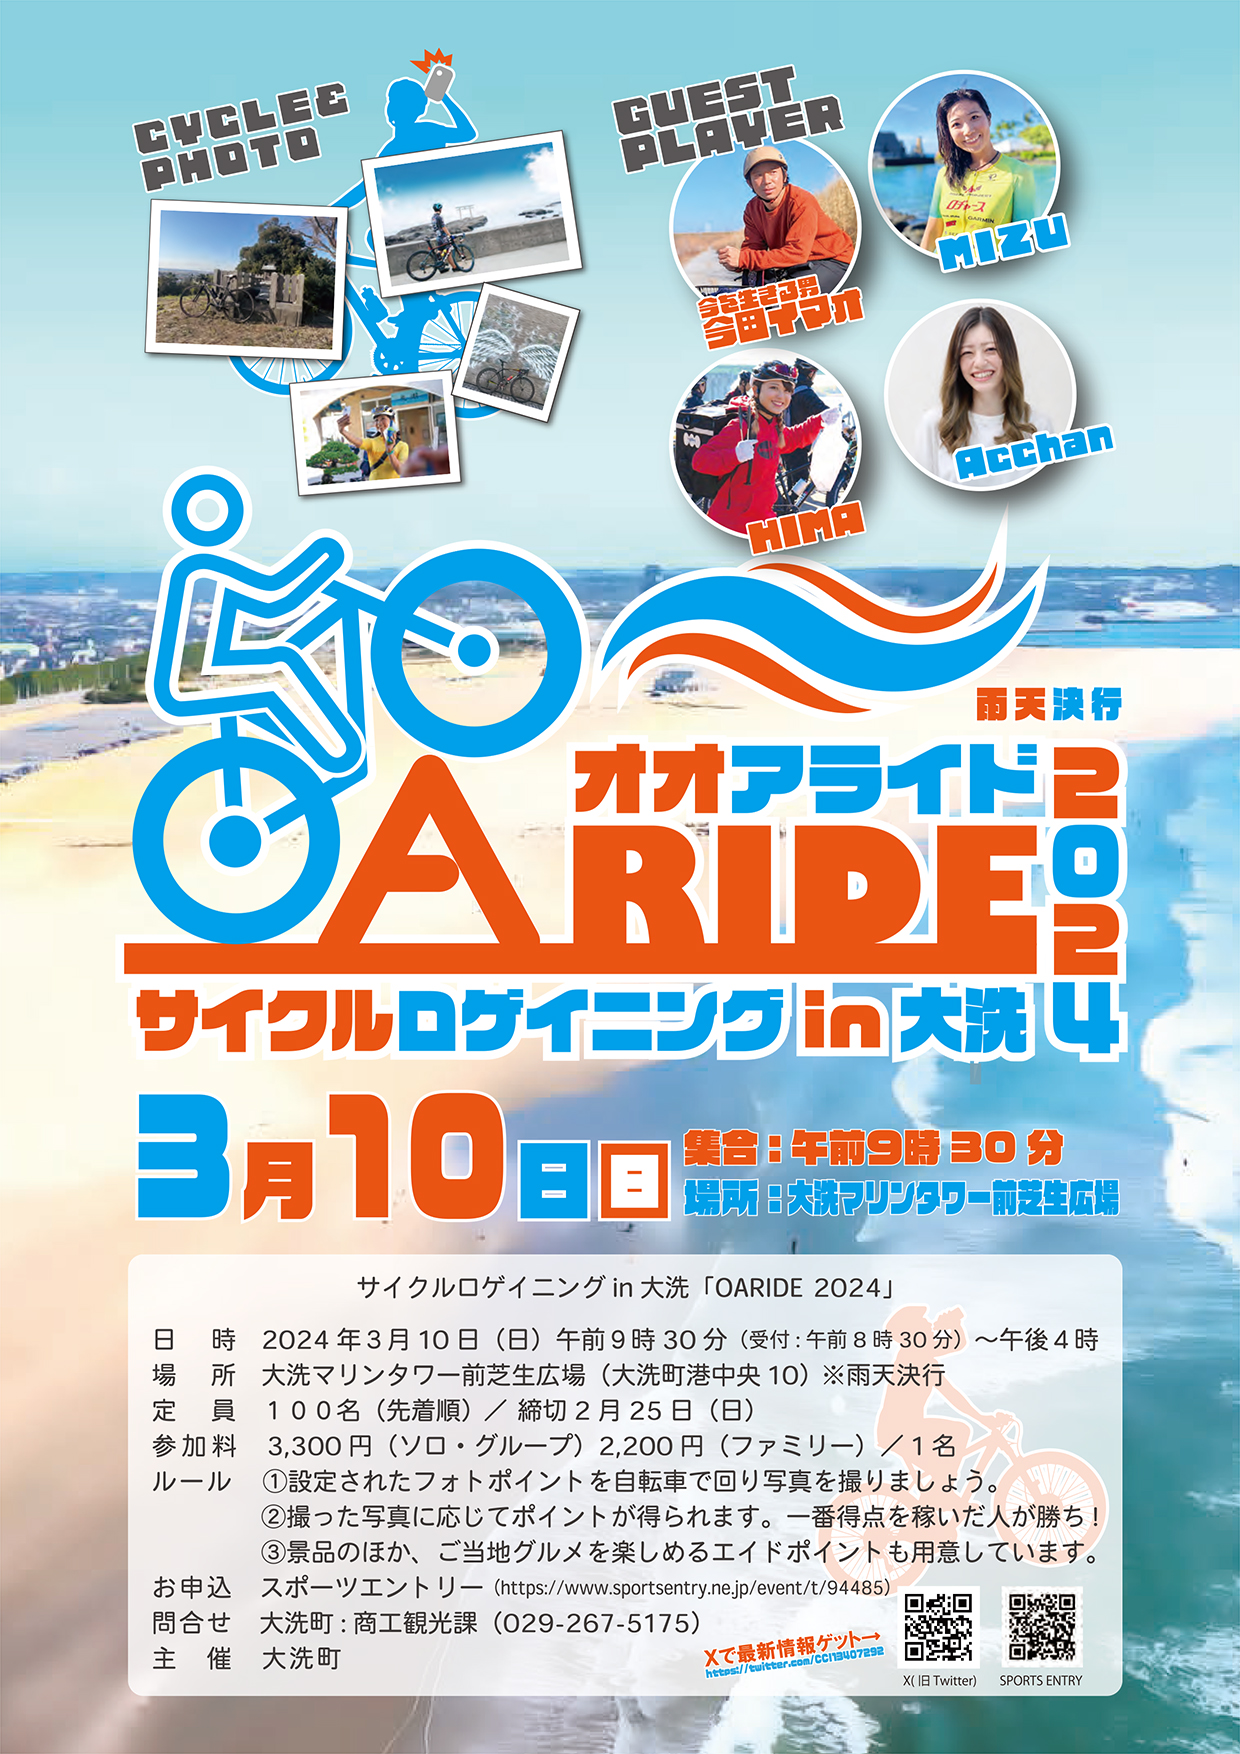 3月10日(日) 大洗を自転車で巡ろう！サイクルロゲイニング in 大洗 「OARIDE」